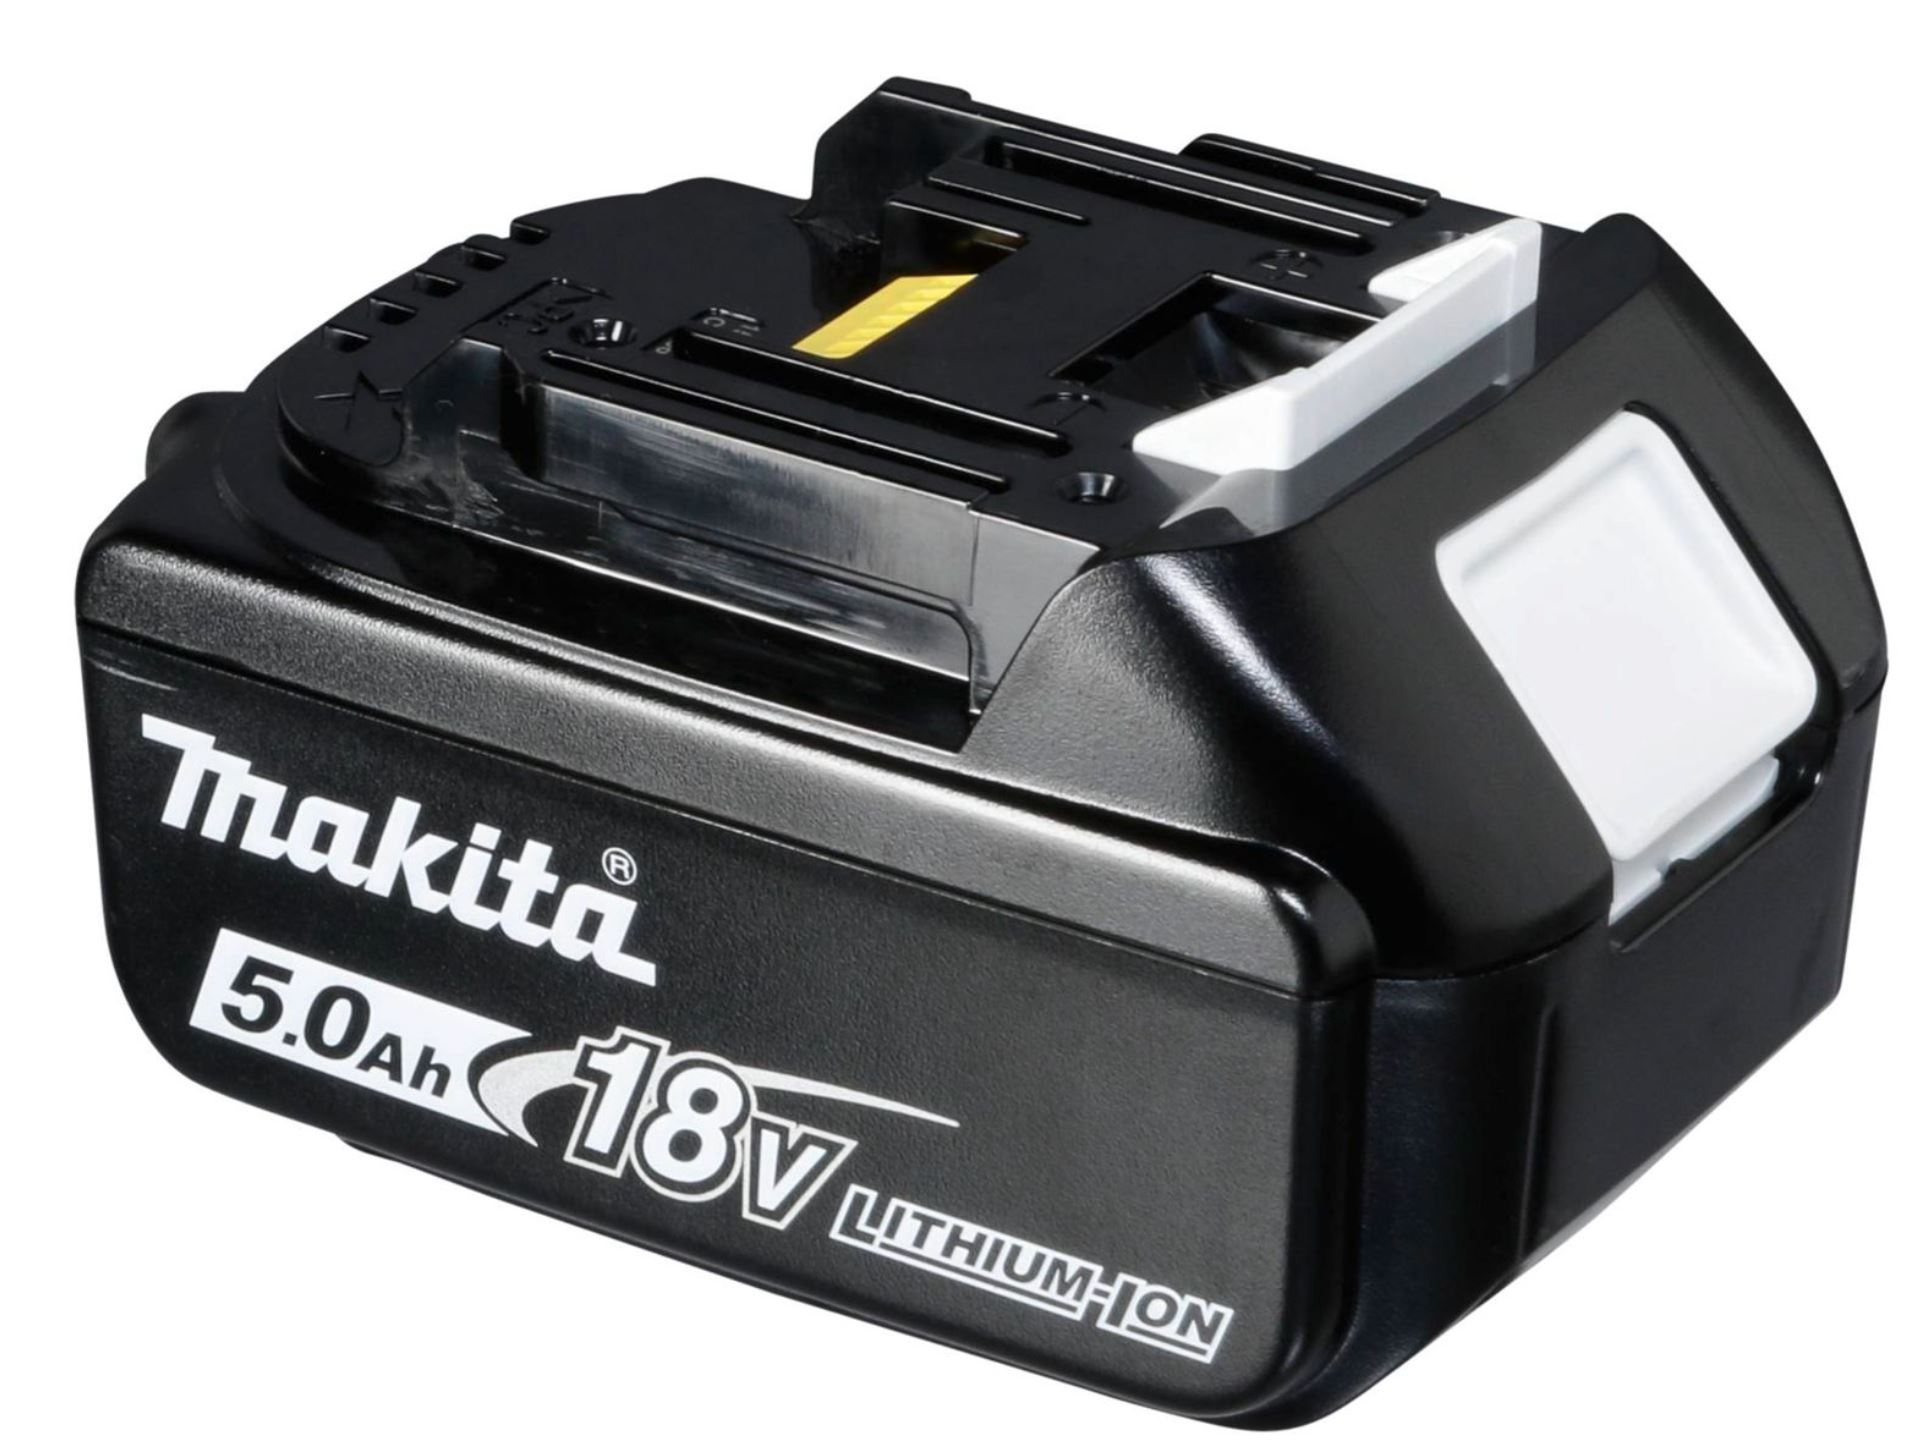 Batterie outillage portatif compatible avec, entre autres, Makita